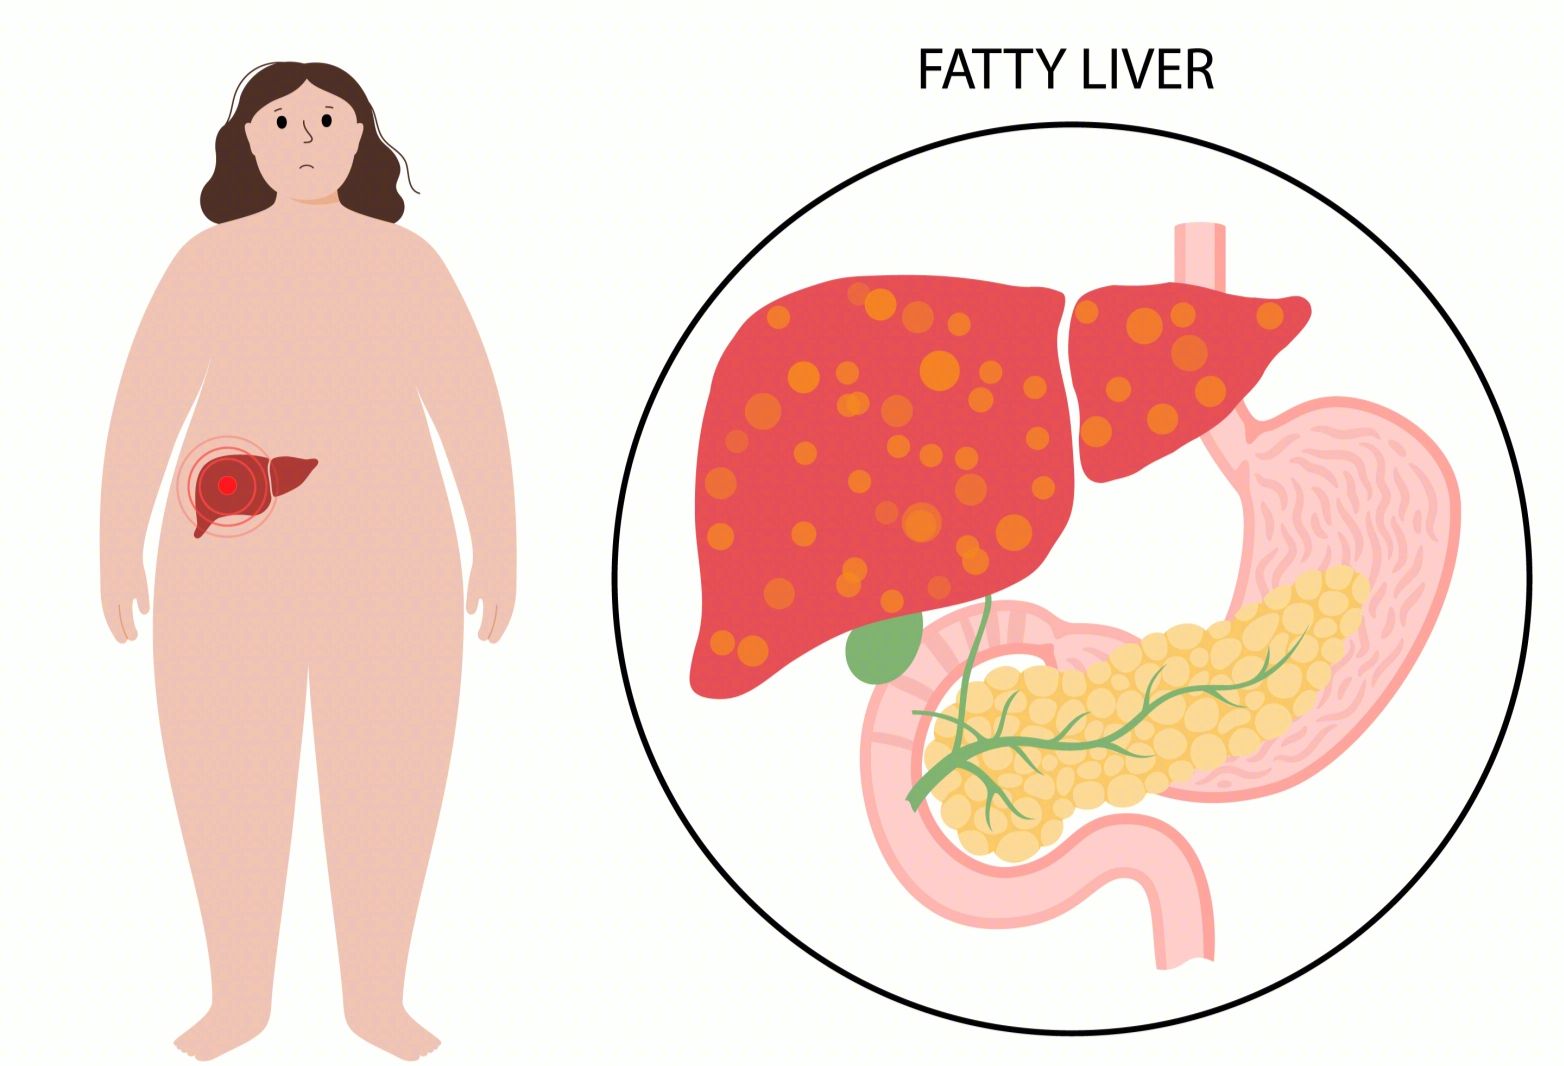 患有脂肪肝要少吃肉？不懂如何饮食的人才容易得脂肪肝